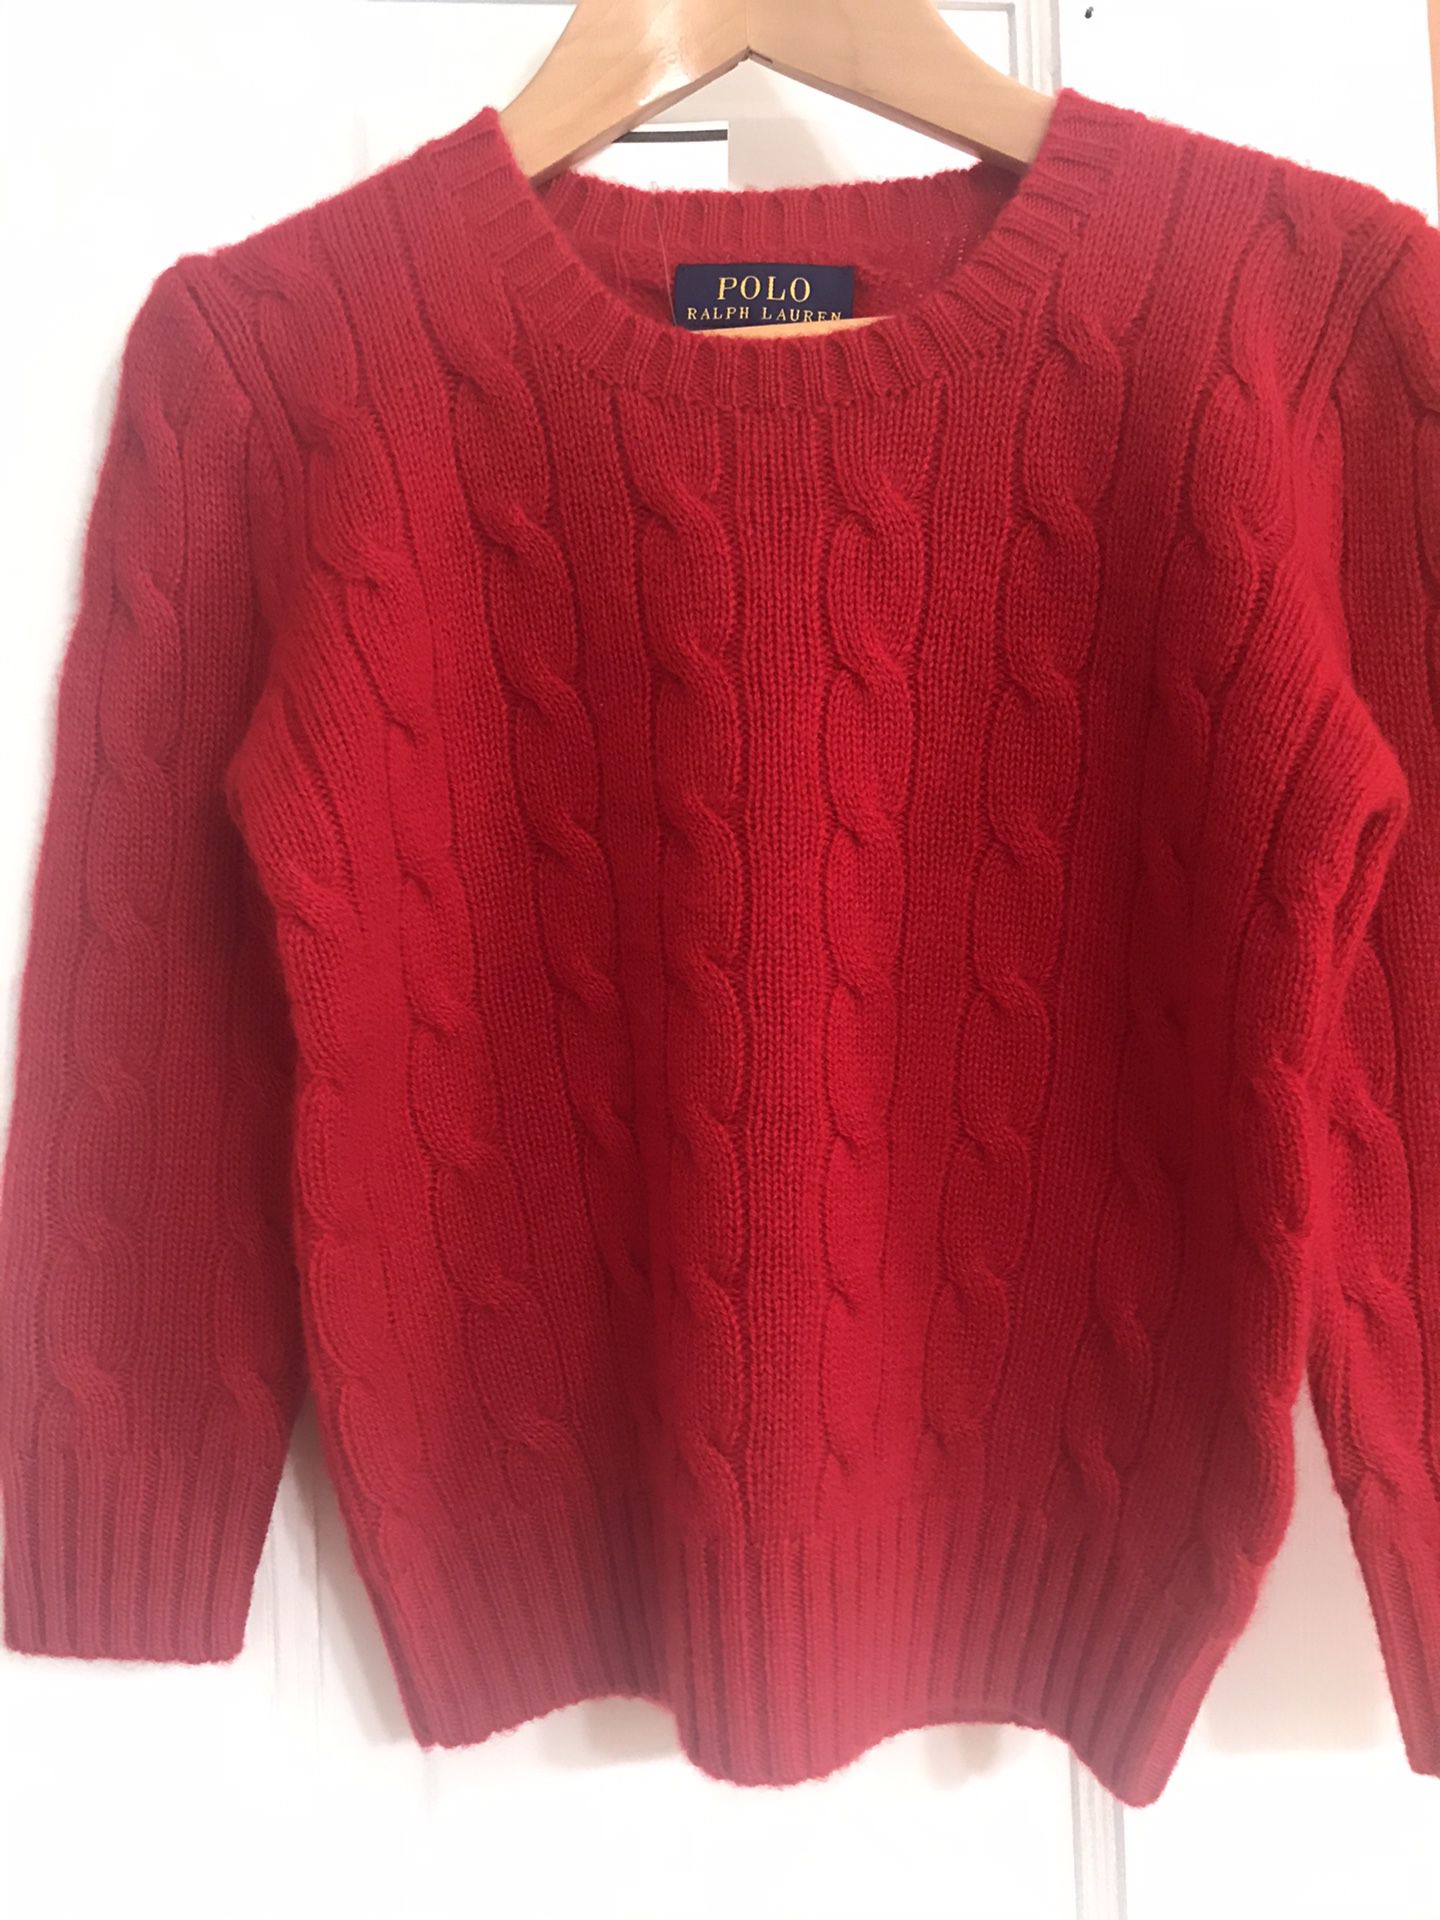 Boys Girls Ralph Lauren cashmere sweater 2T 3T Christmas